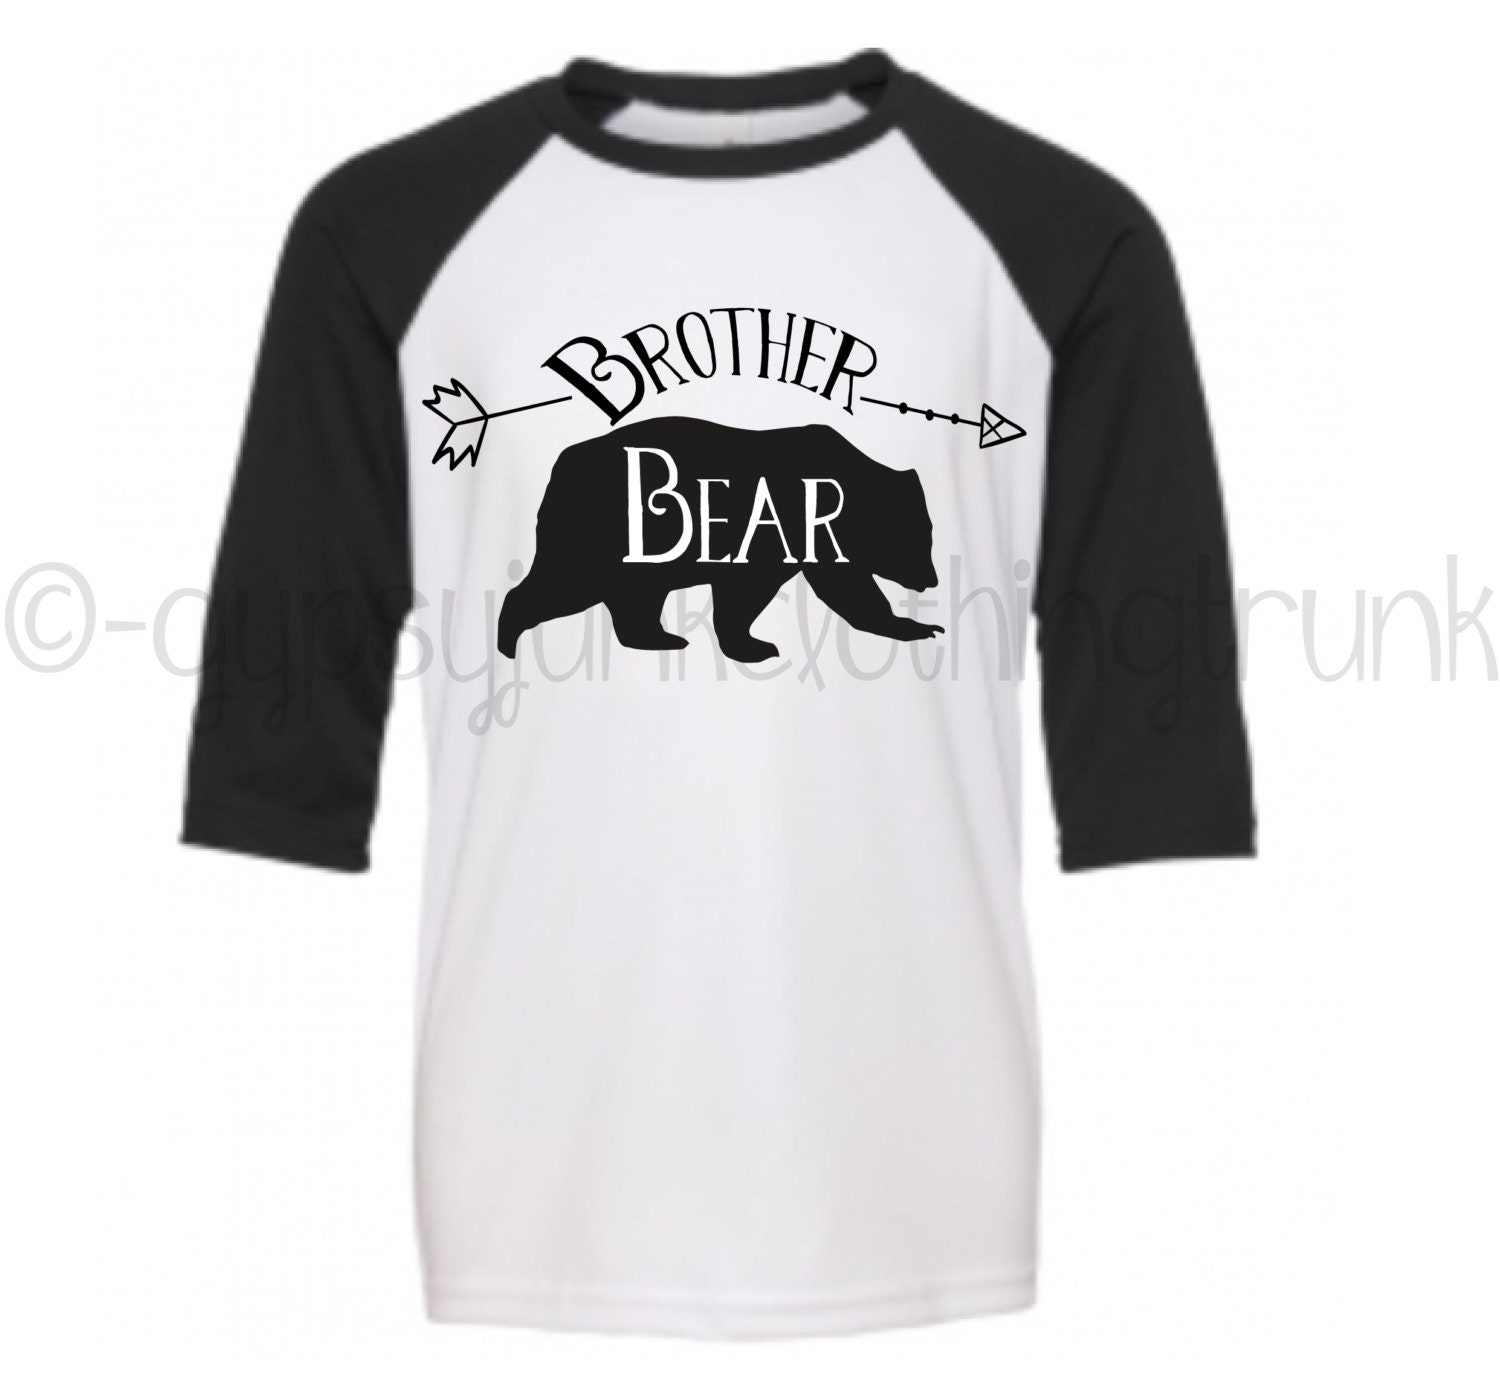 Brother Bear Raglan Shirt Brother Bear Shirt Bear Shirt